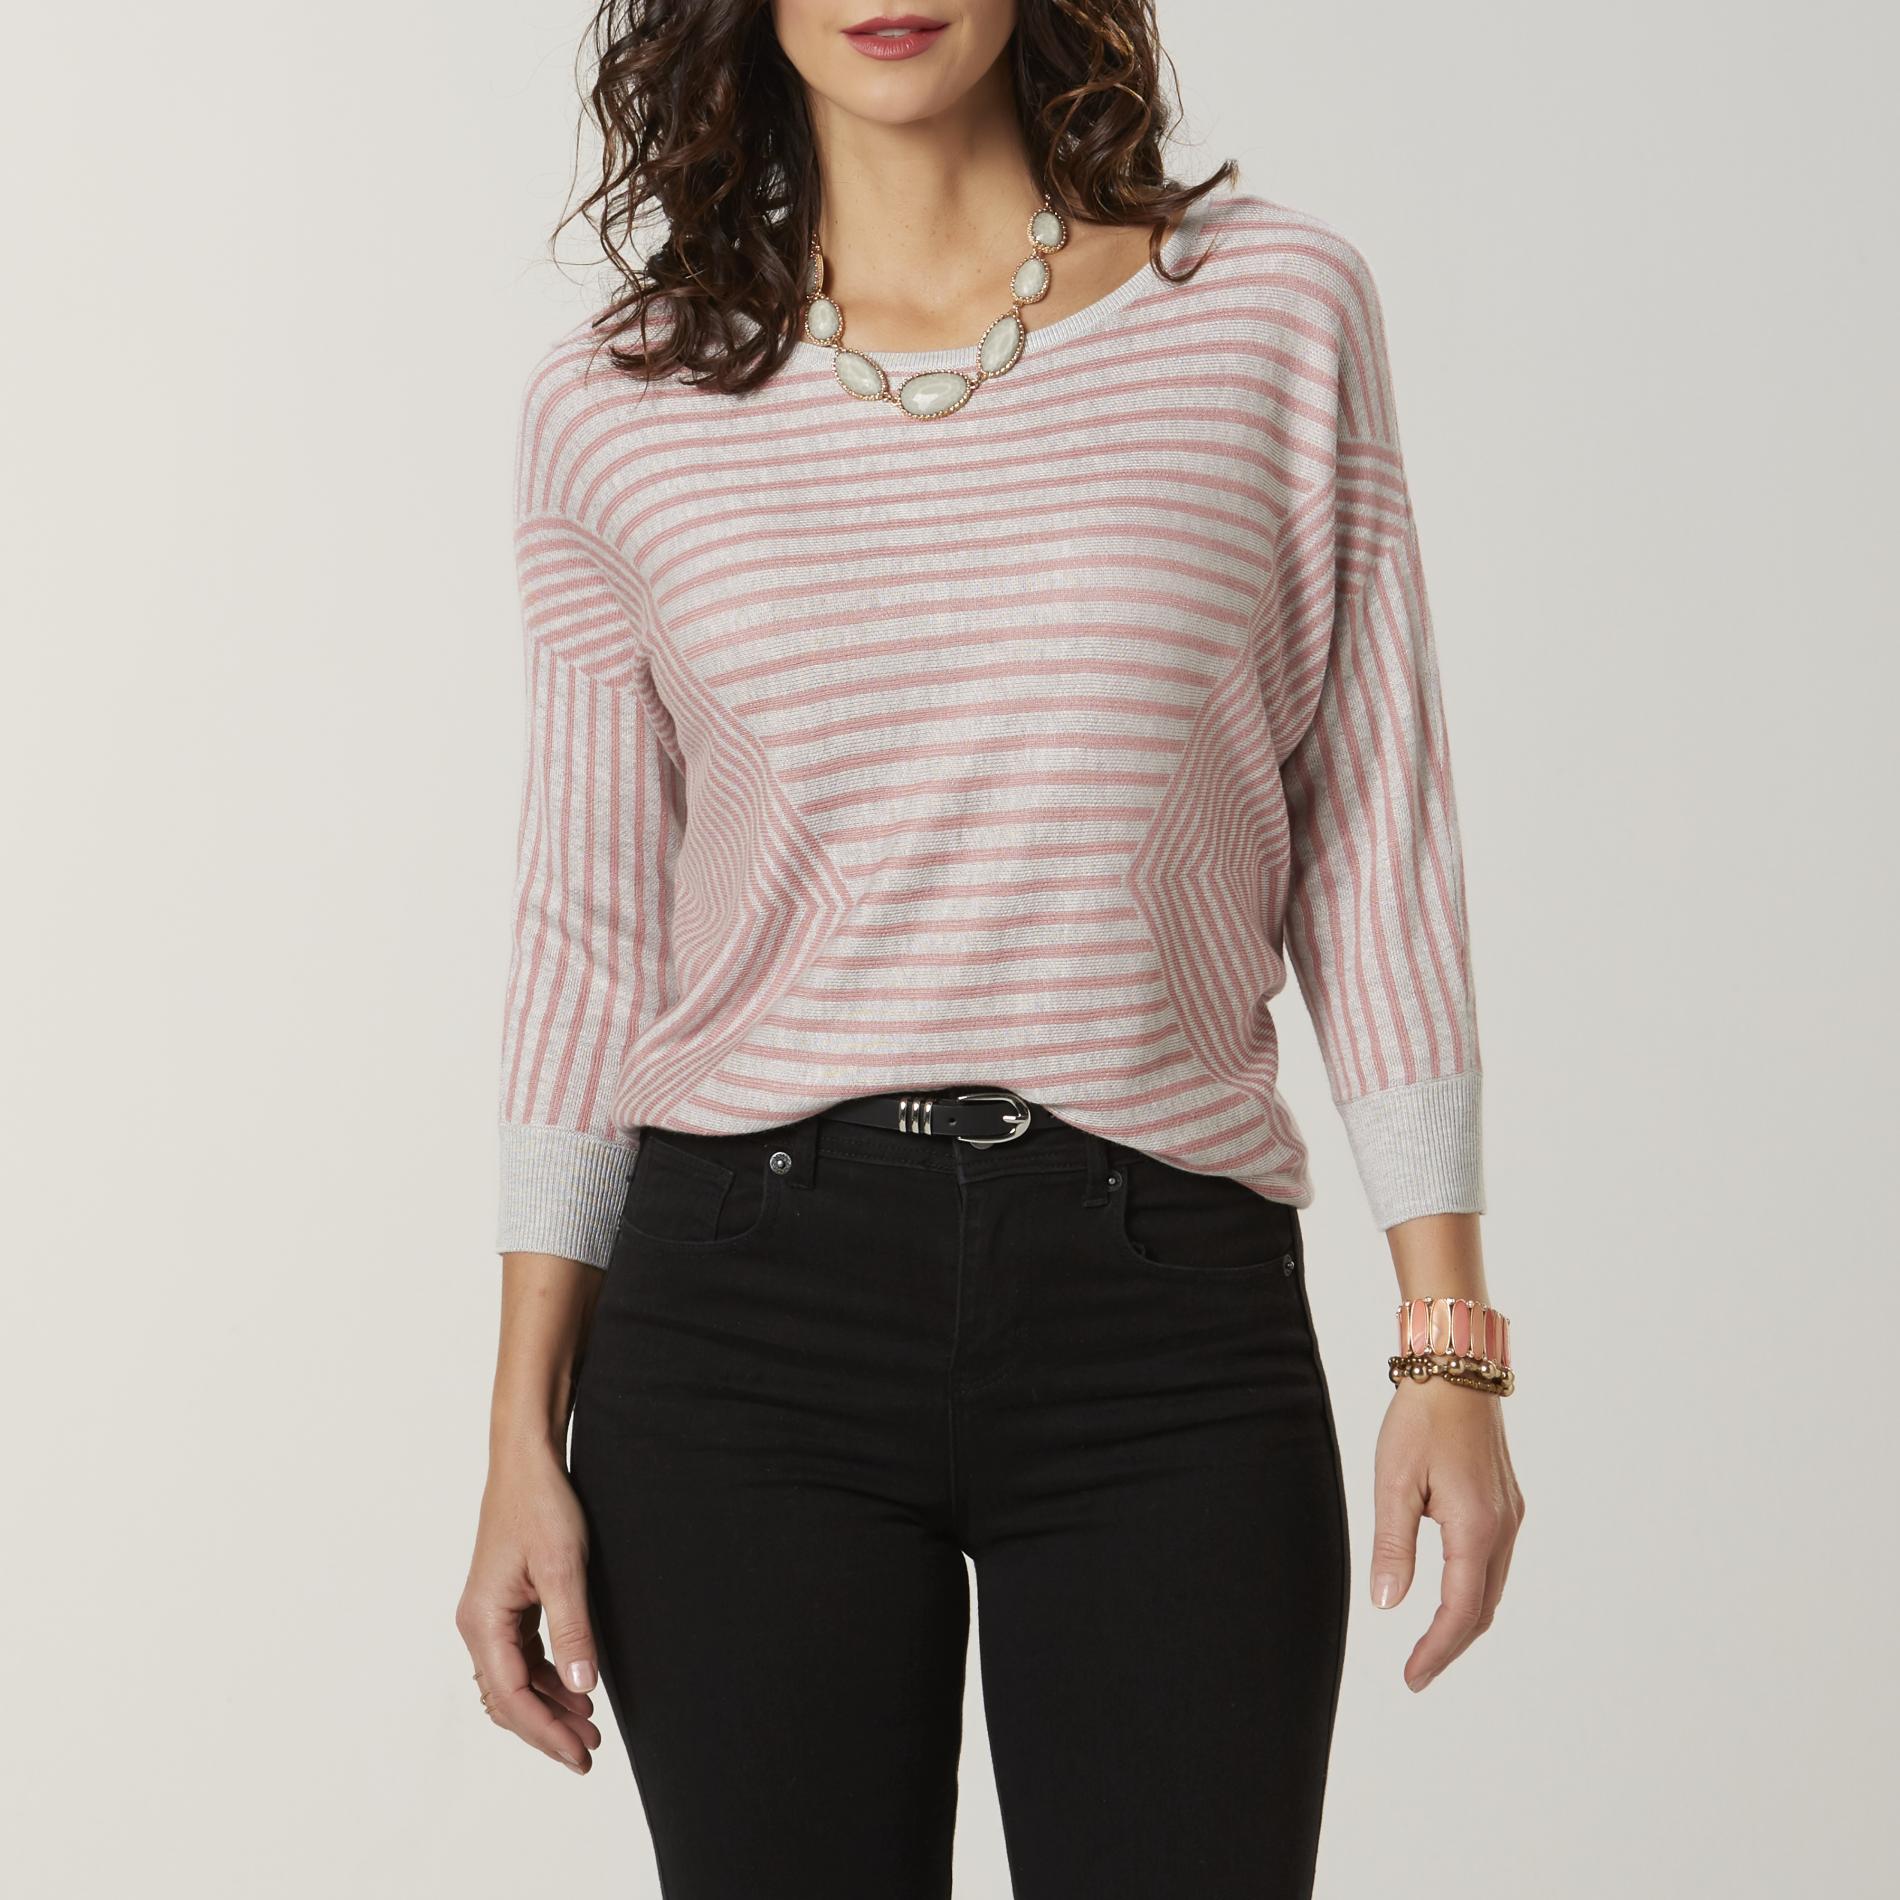 Jaclyn Smith Women's Sweater - Striped